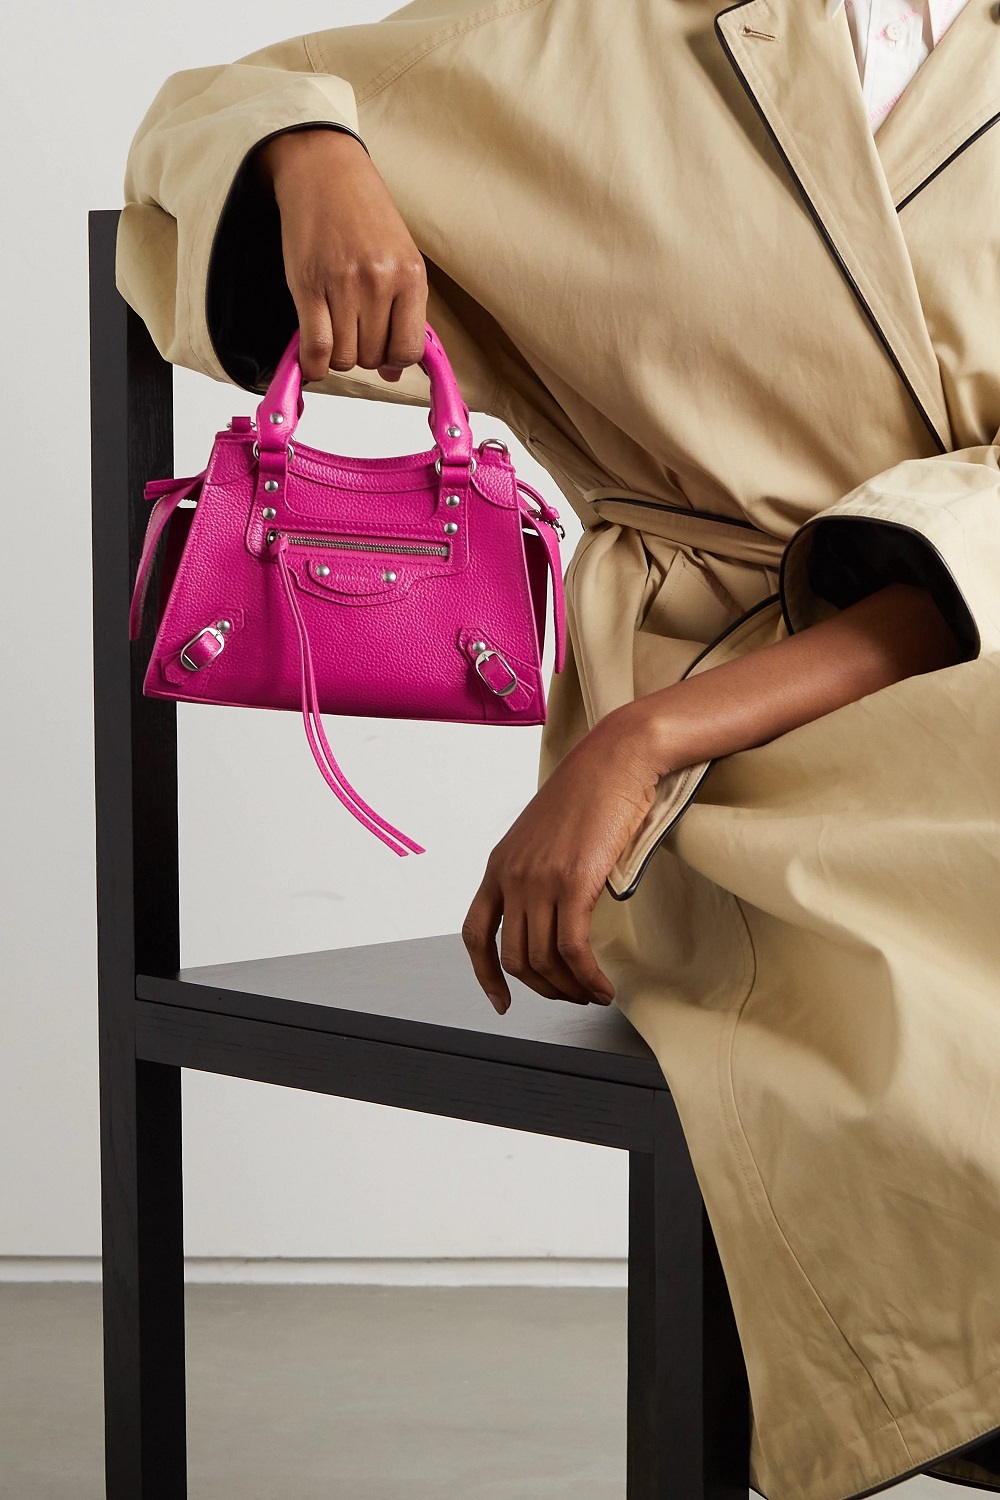 Balenciaga torbe u boji proljeće ljeto 2021. 